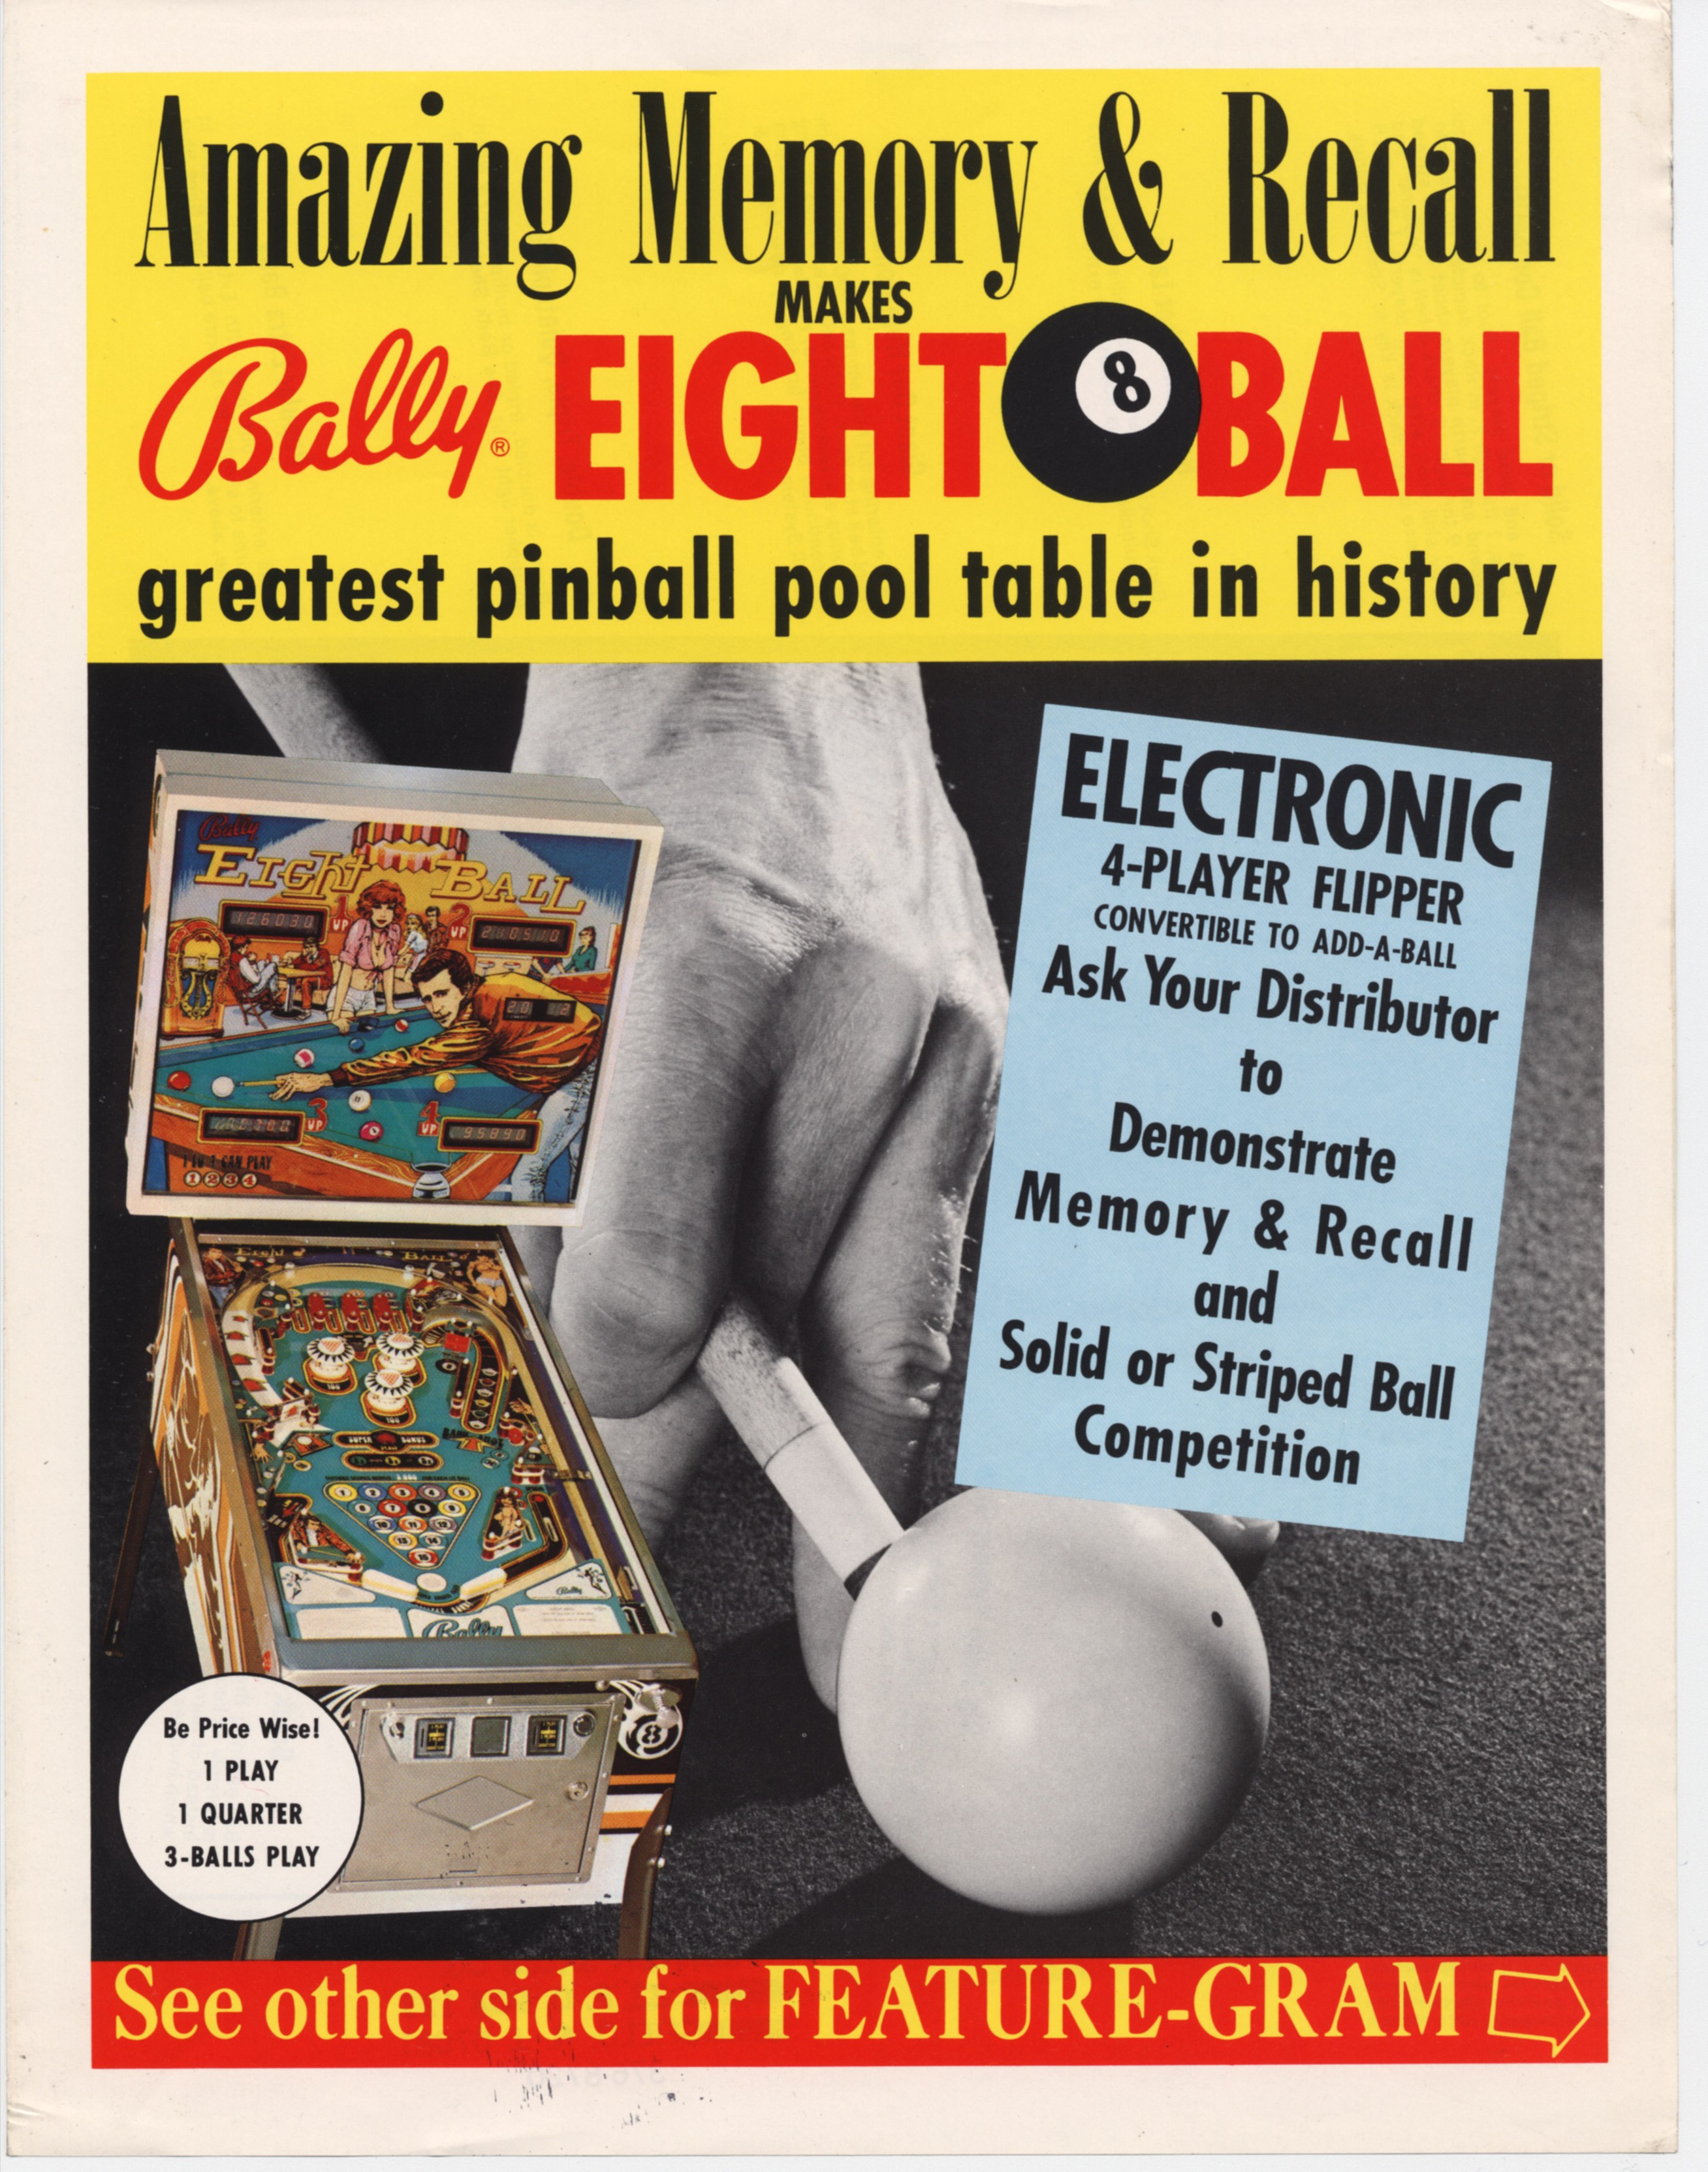 Eight Ball (Bally, 1977)